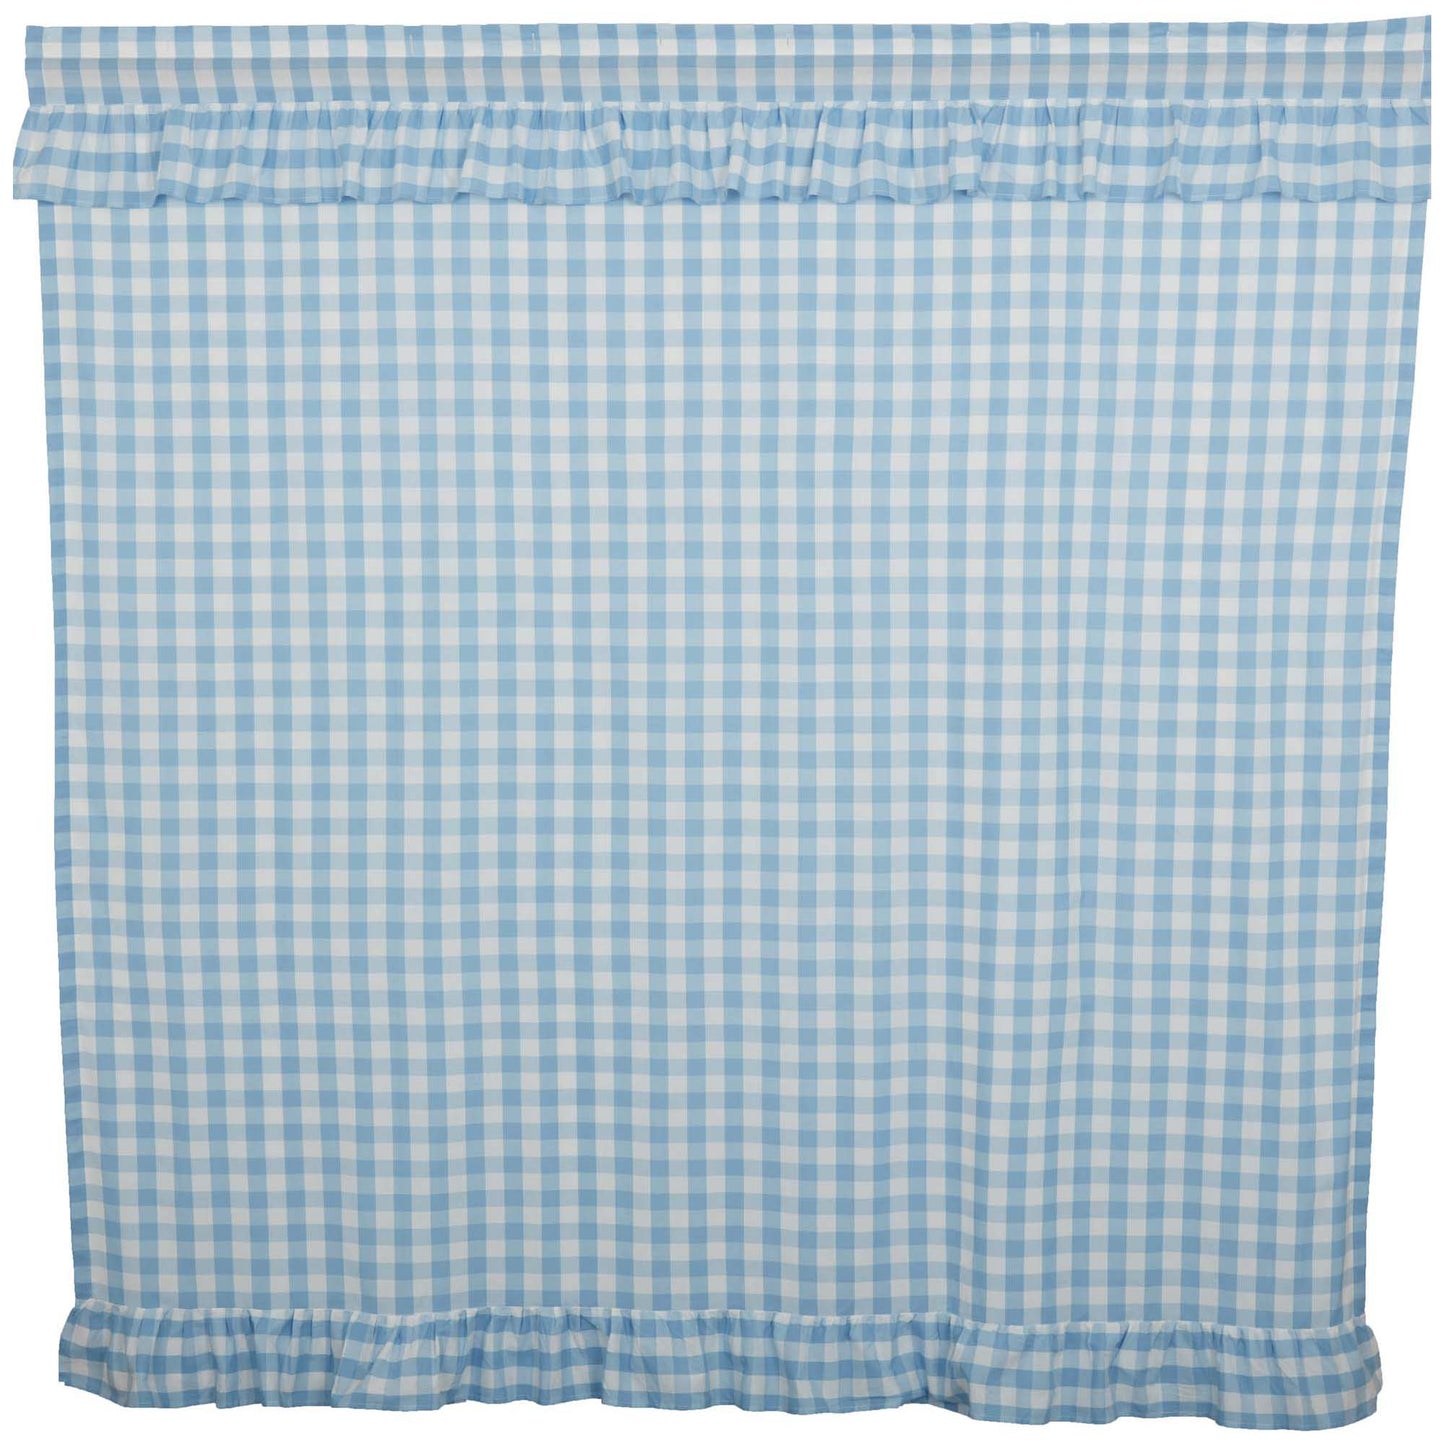 69919-Annie-Buffalo-Blue-Check-Ruffled-Shower-Curtain-72x72-image-3